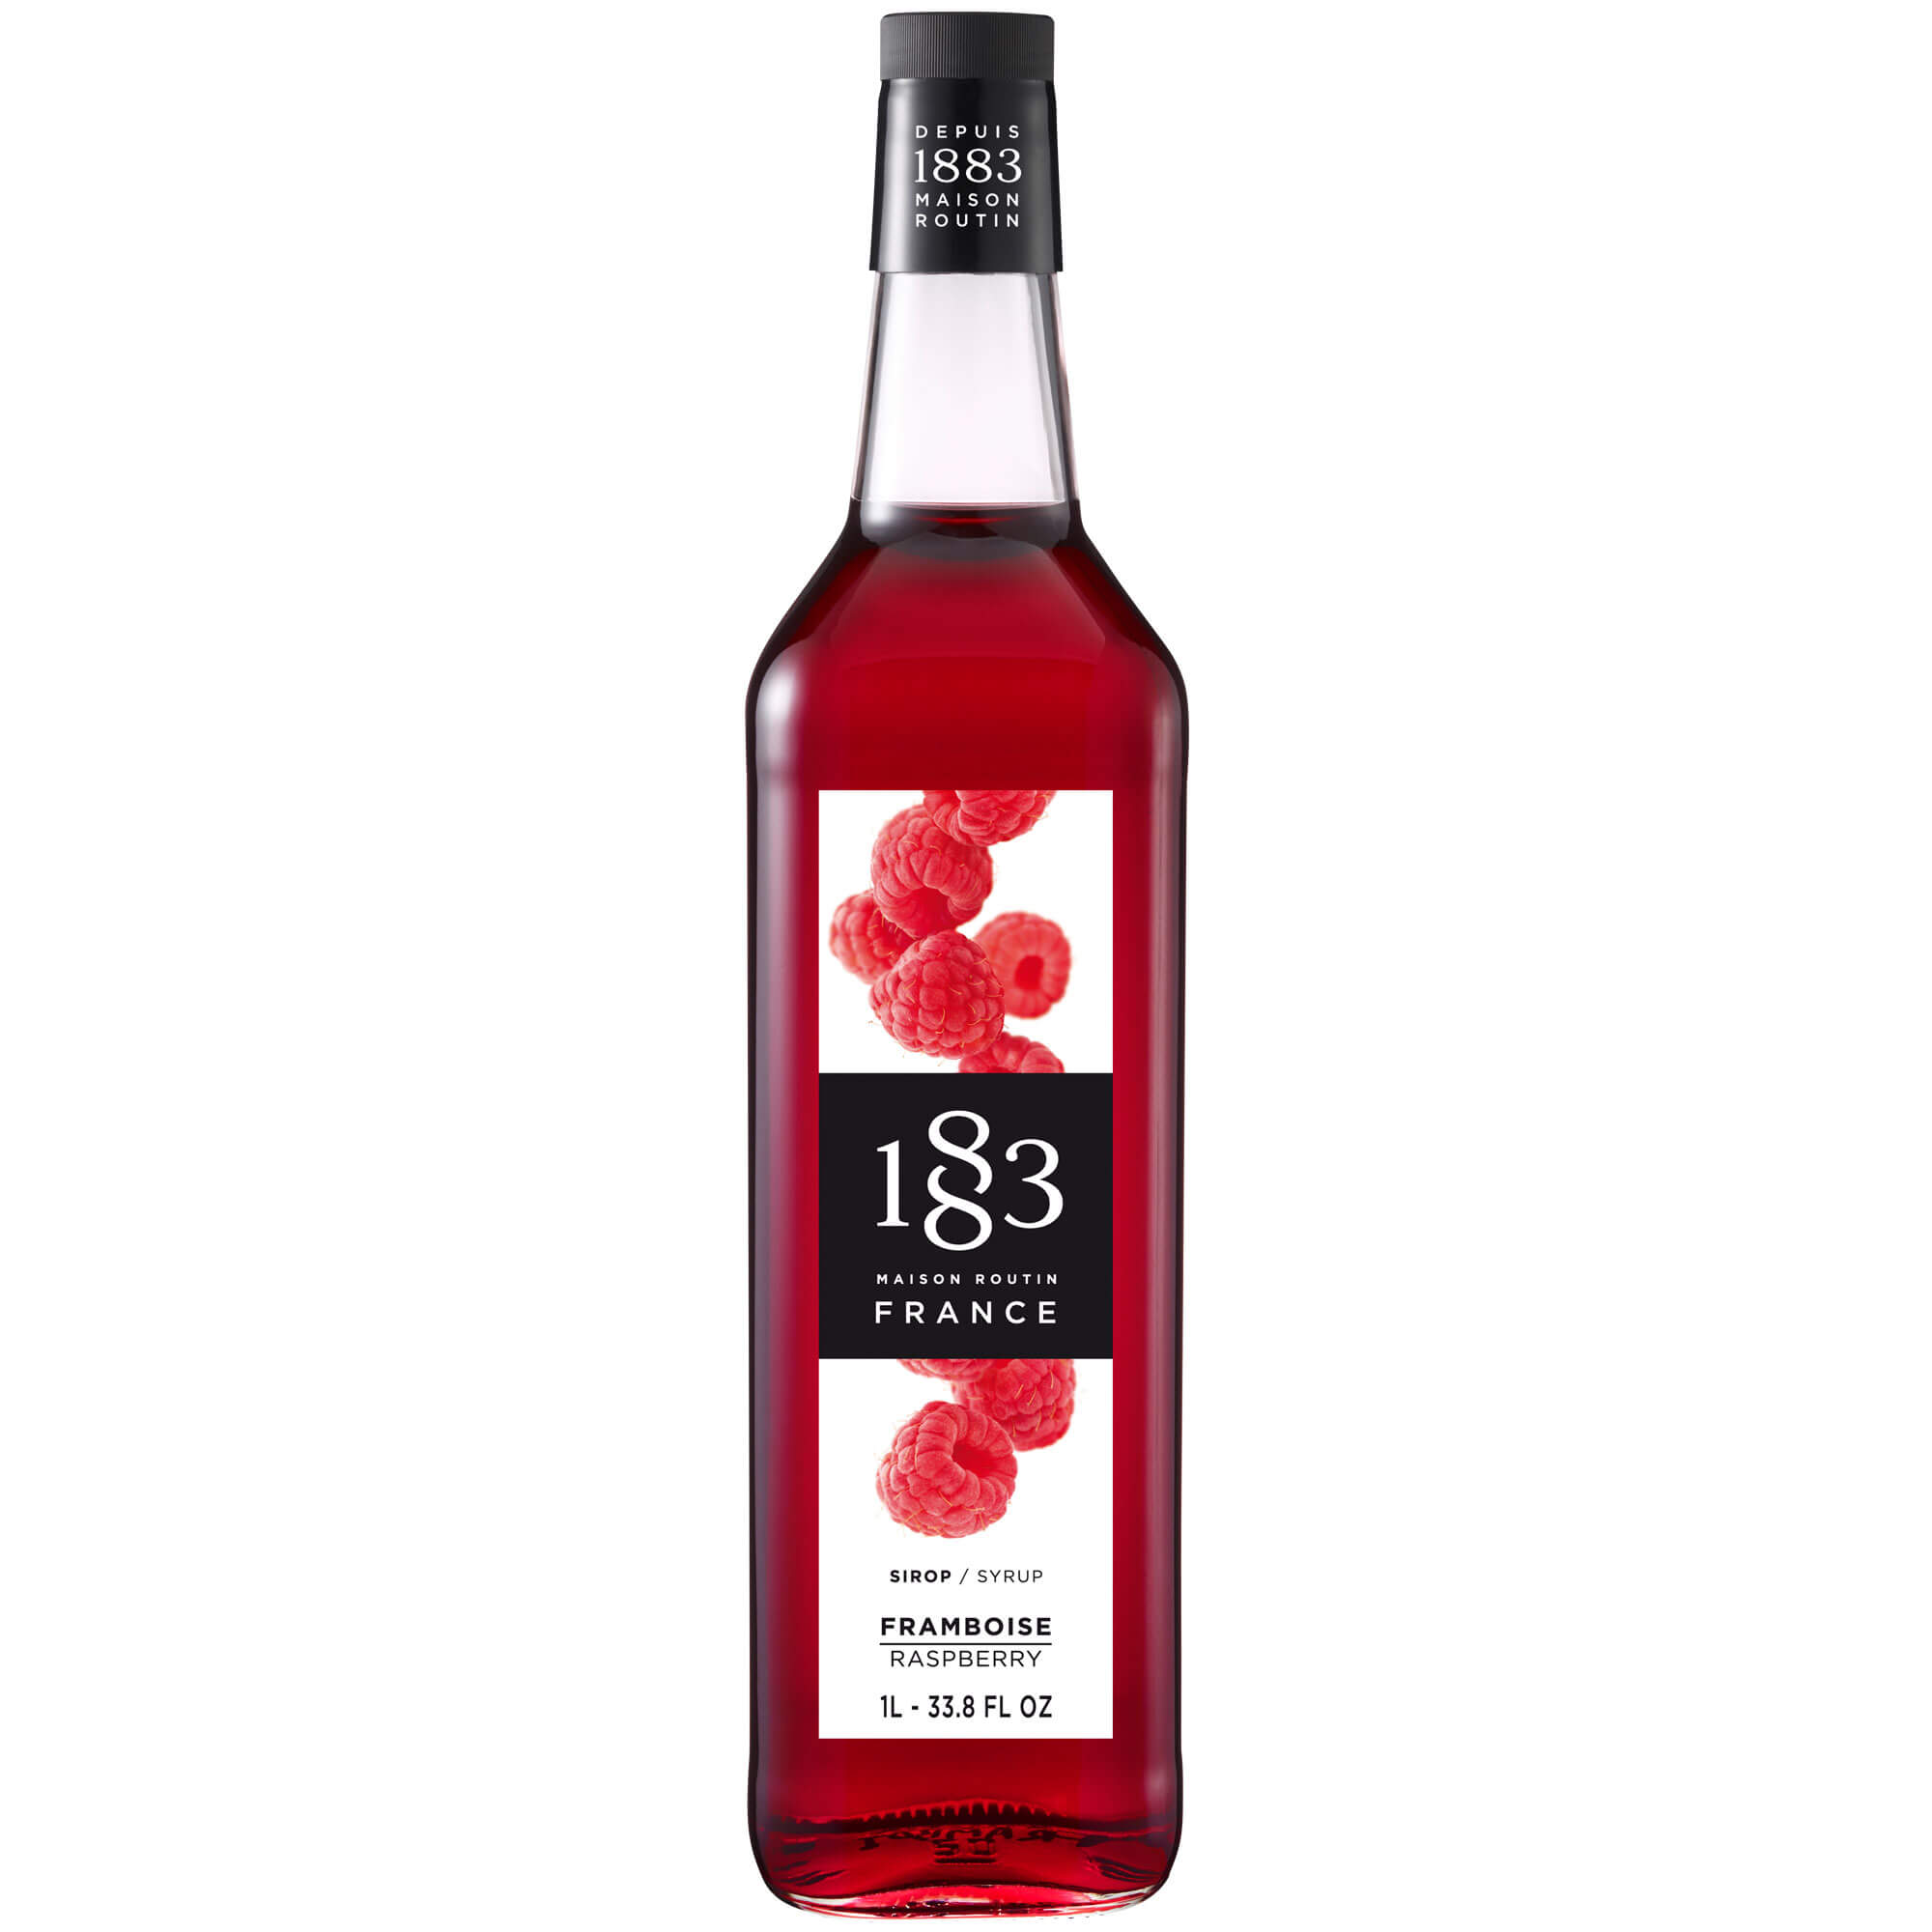 Raspberry - Maison Routin 1883 syrup (1,0l)